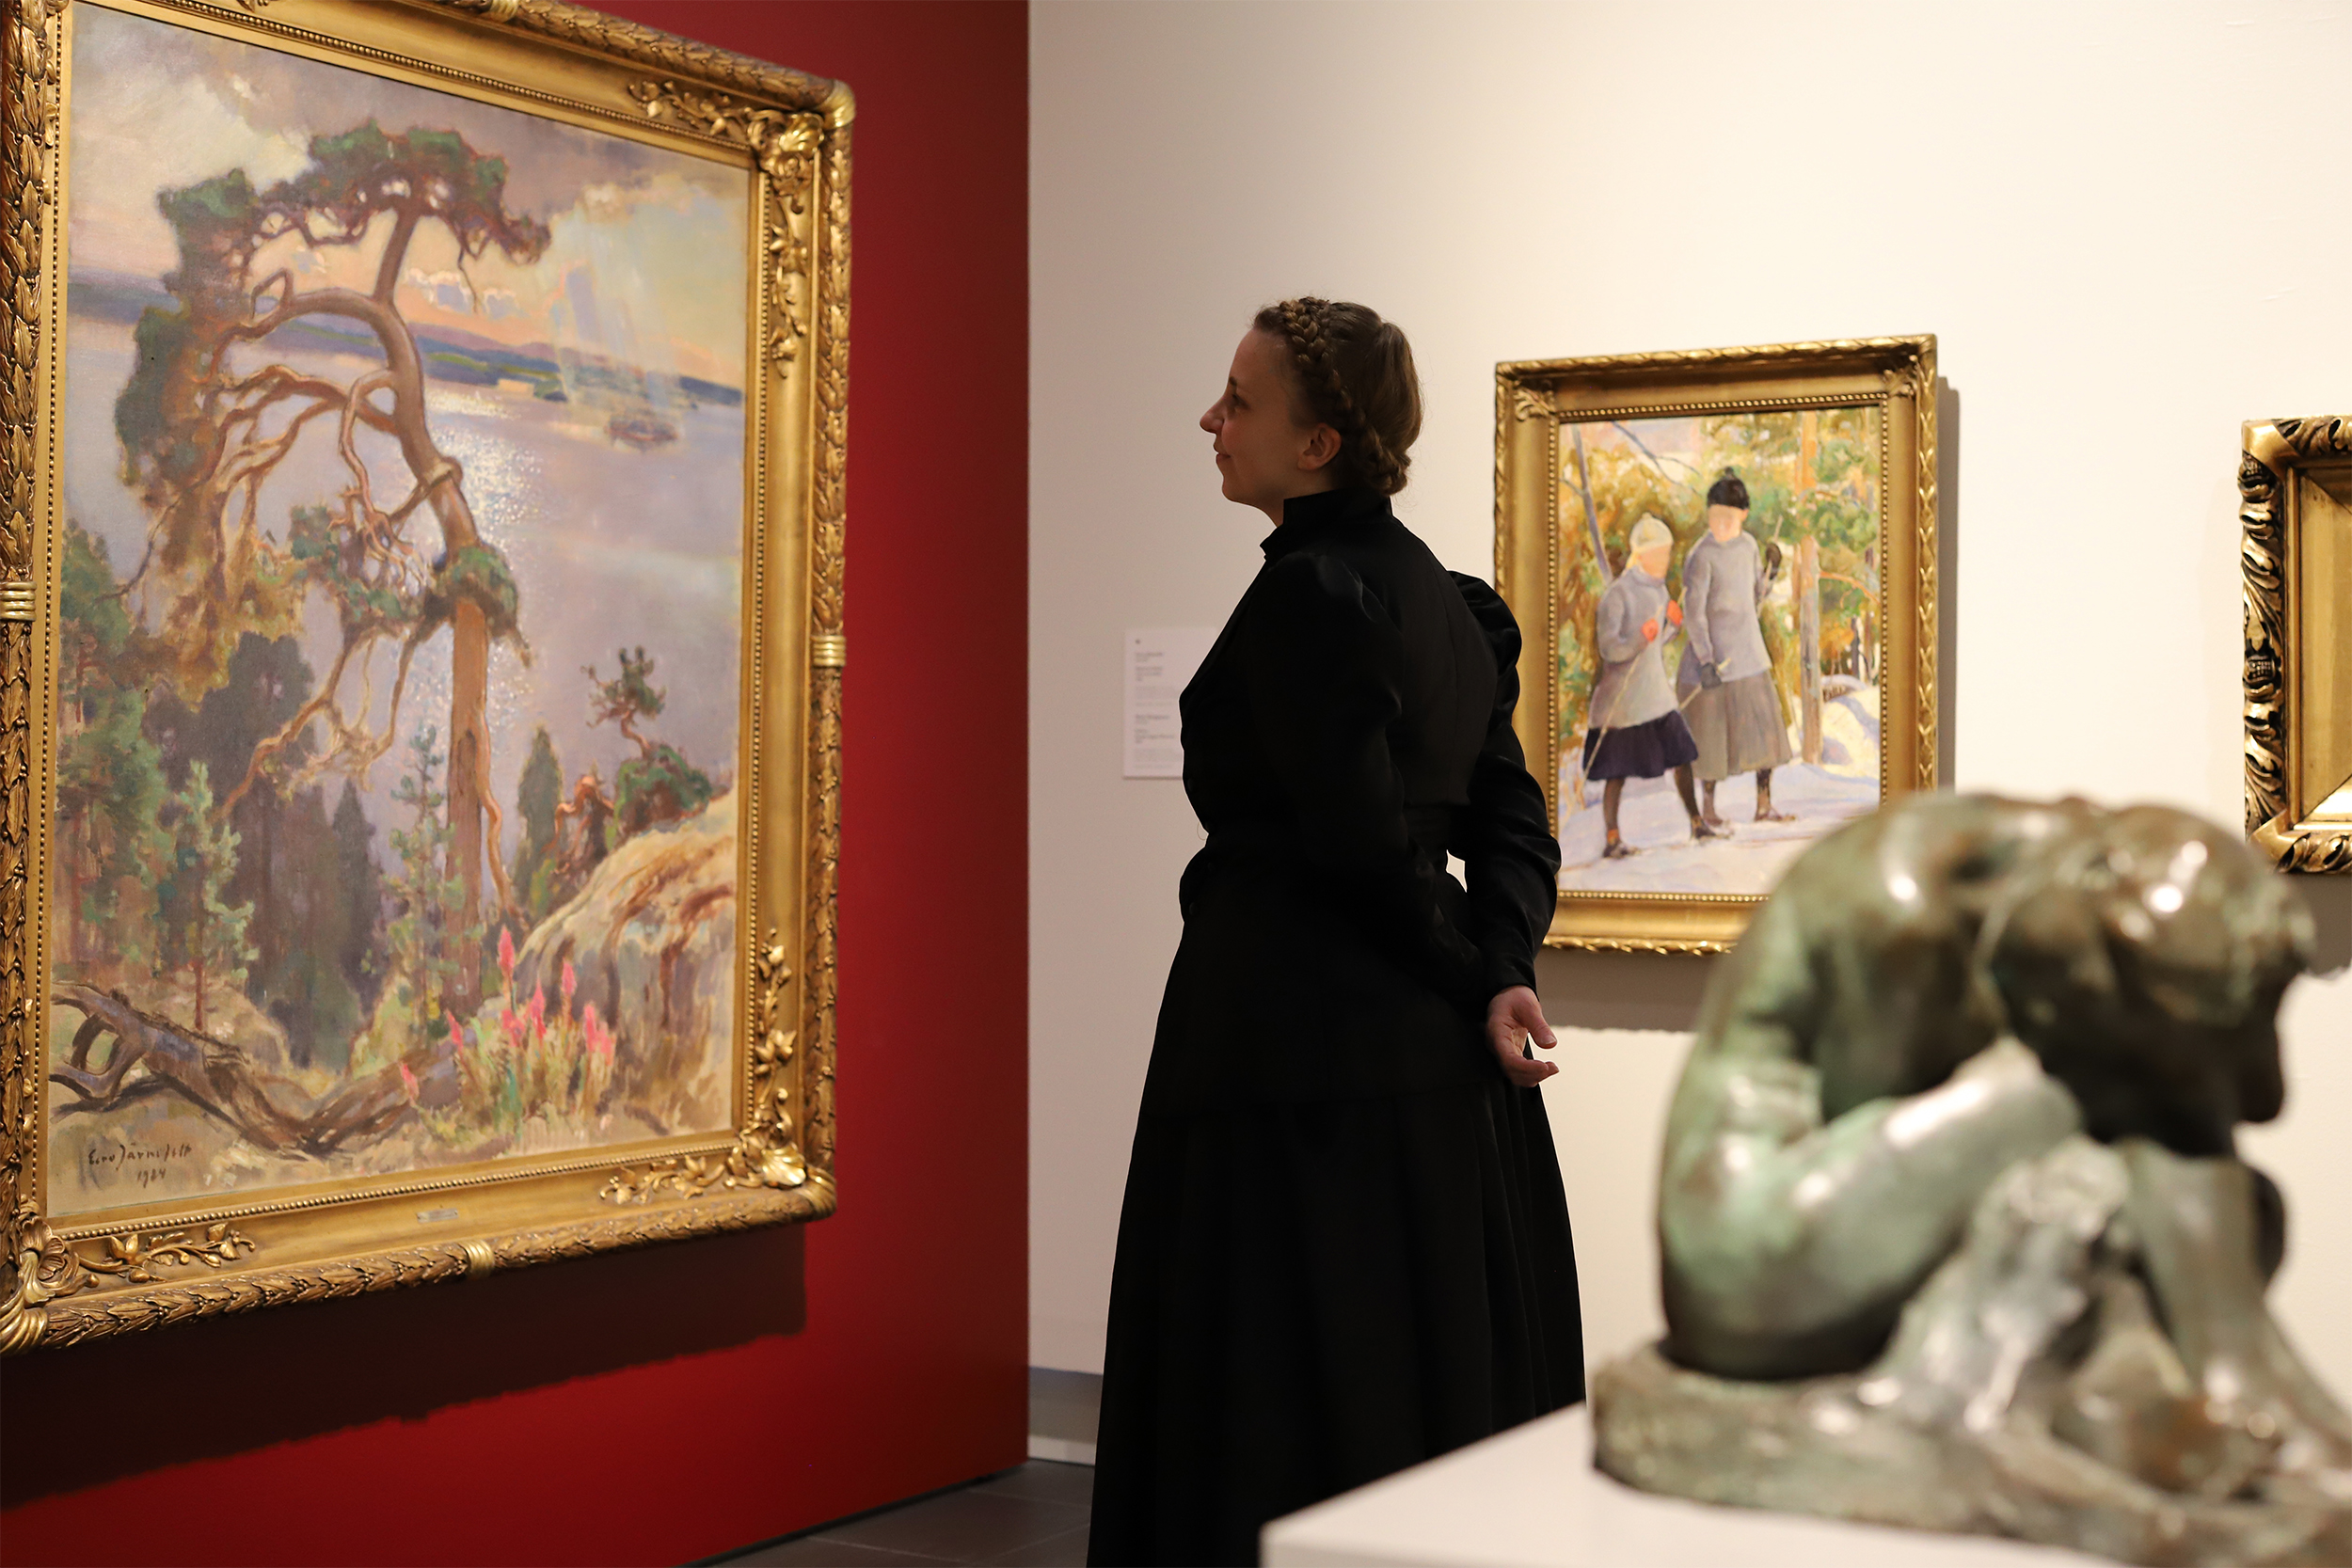 Taidemuseon näyttelytila, jonka keskellä seisoo vanhaan juhlavaan mekkoon pukeutunut nainen katsellen suurikokoista maisemamaalausta.